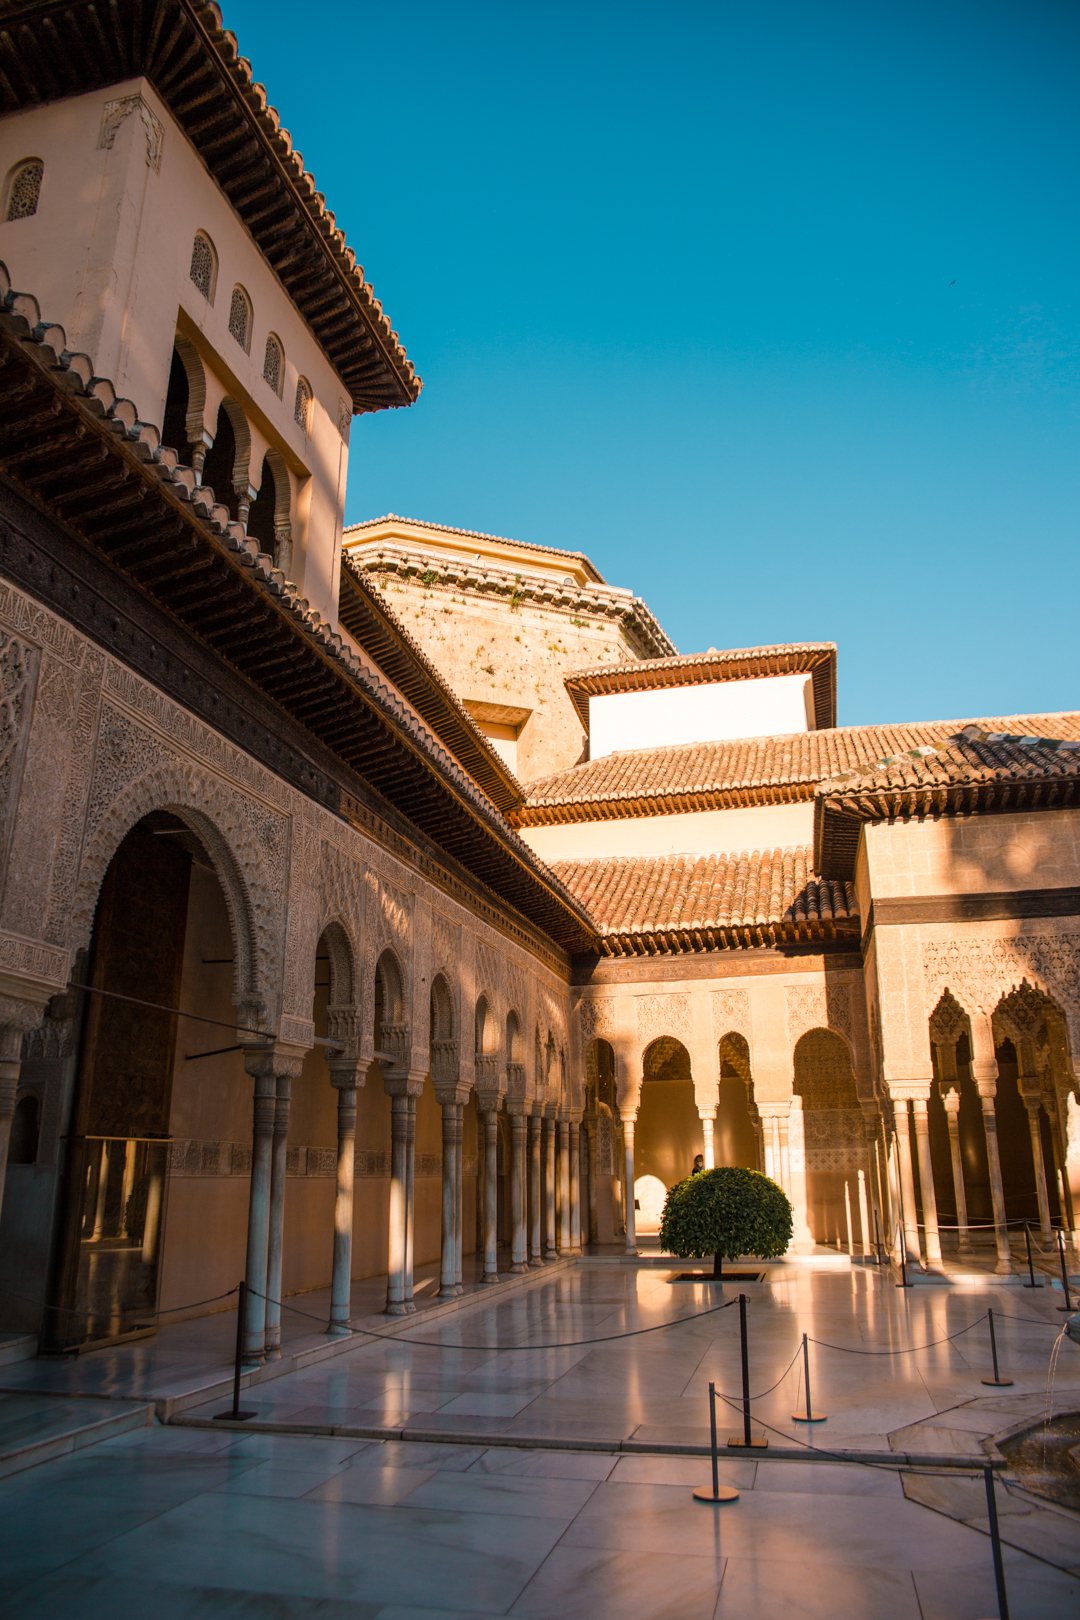 Courtyard view of the Patio de los Leones in Alhambra, Granada, Spain.